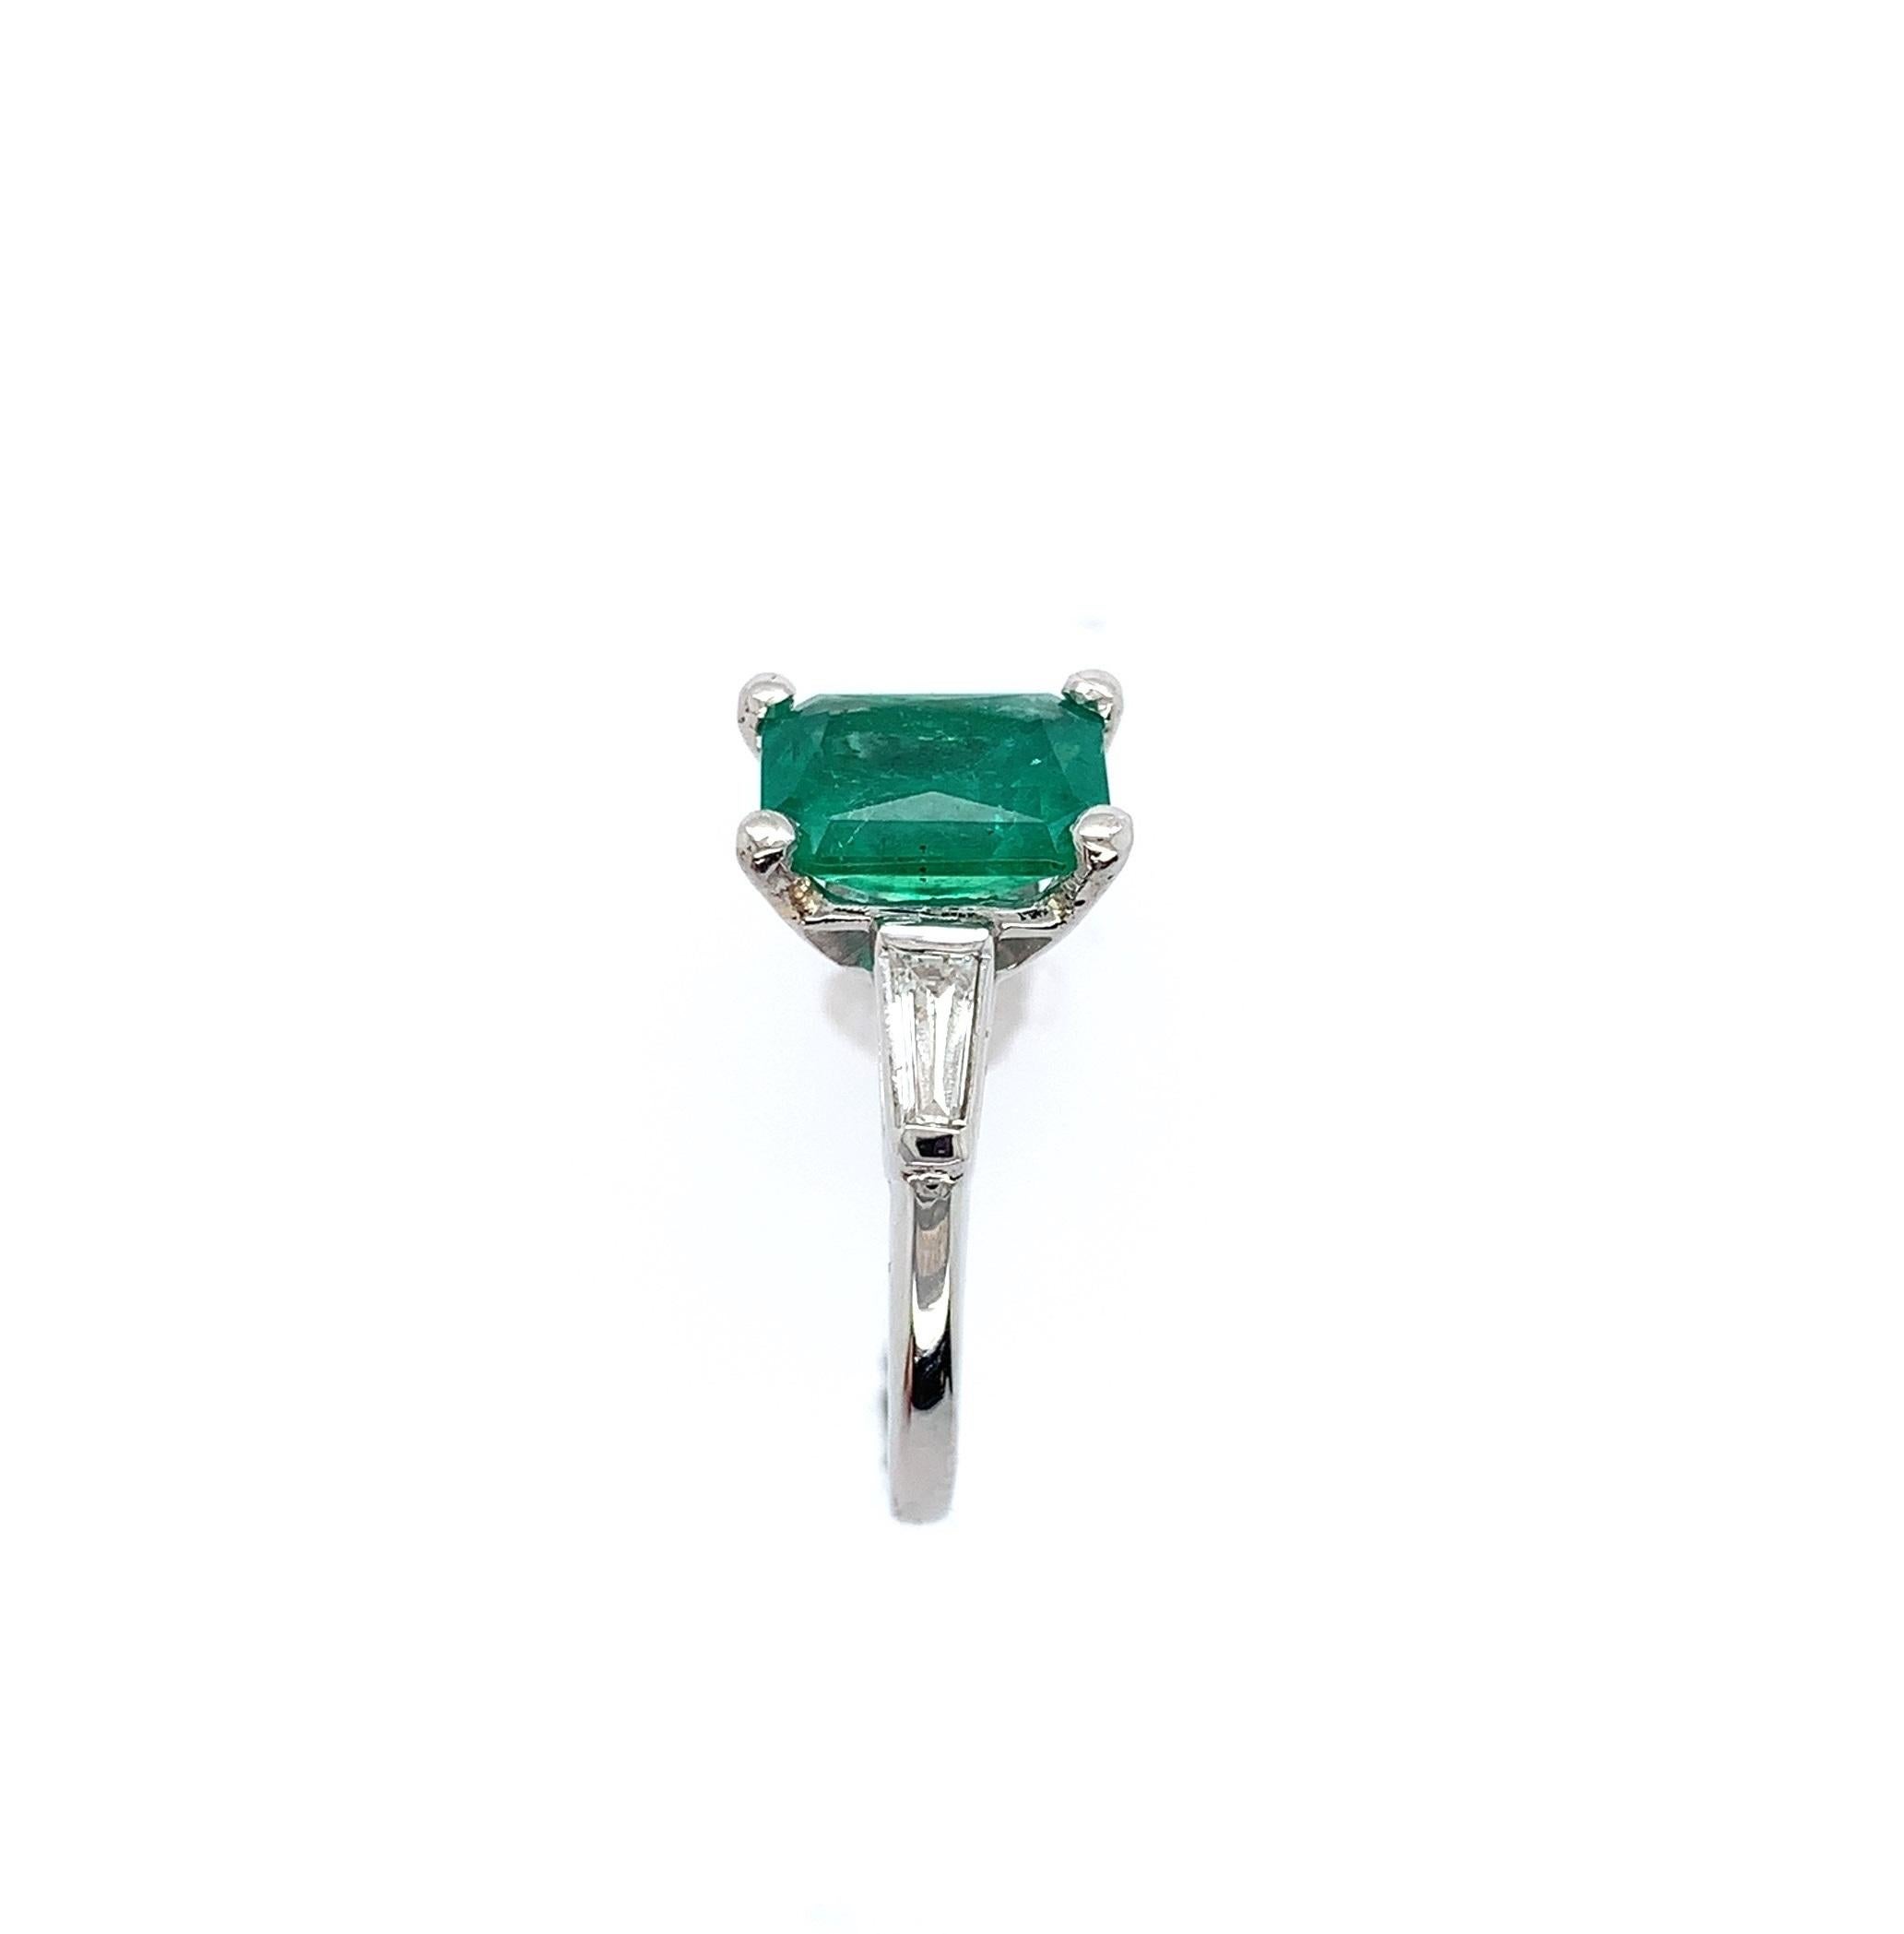 Platin Smaragd und Diamant-Ring mit einem echten Erde abgebaut Smaragd mit einem Gewicht von 1,87 Karat mit GIA-Bericht # 5222332952. Dem Bericht zufolge handelt es sich um einen achteckigen Brillantschliff mit den Maßen 8,58 mm x 6,63 mm x 5,24 mm.